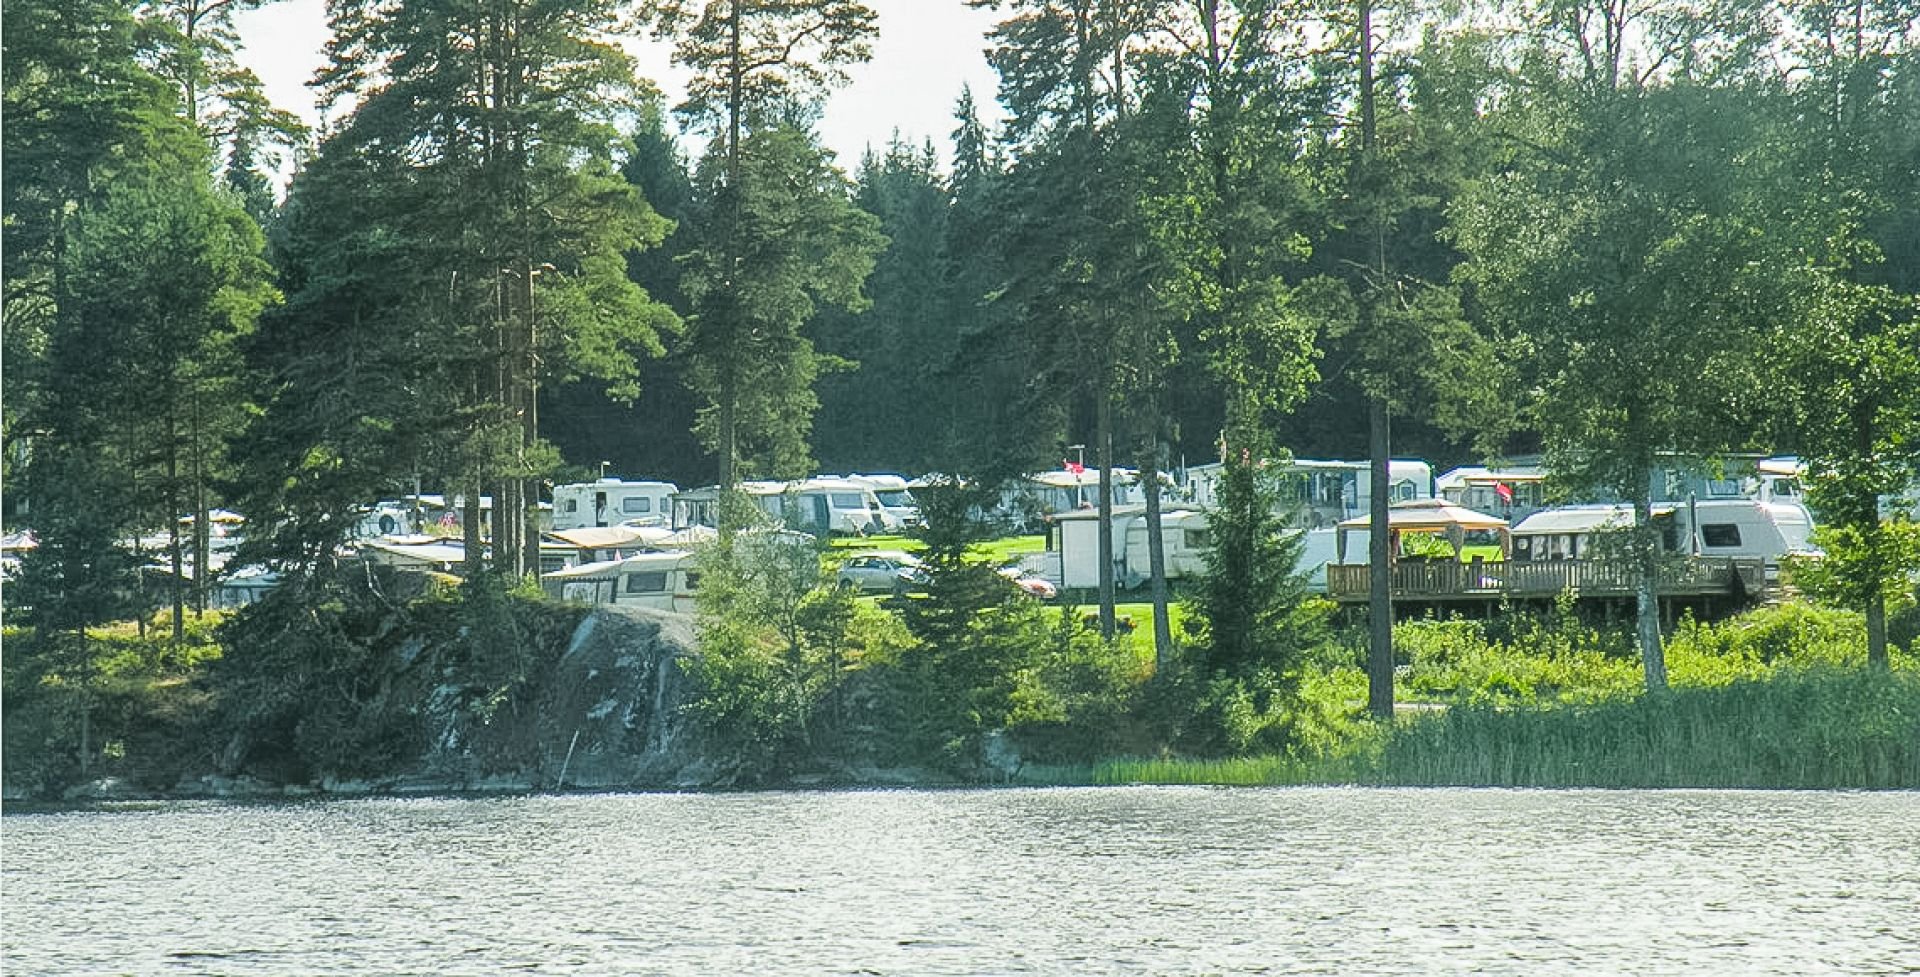 Elovsbyn Camping och Canoe